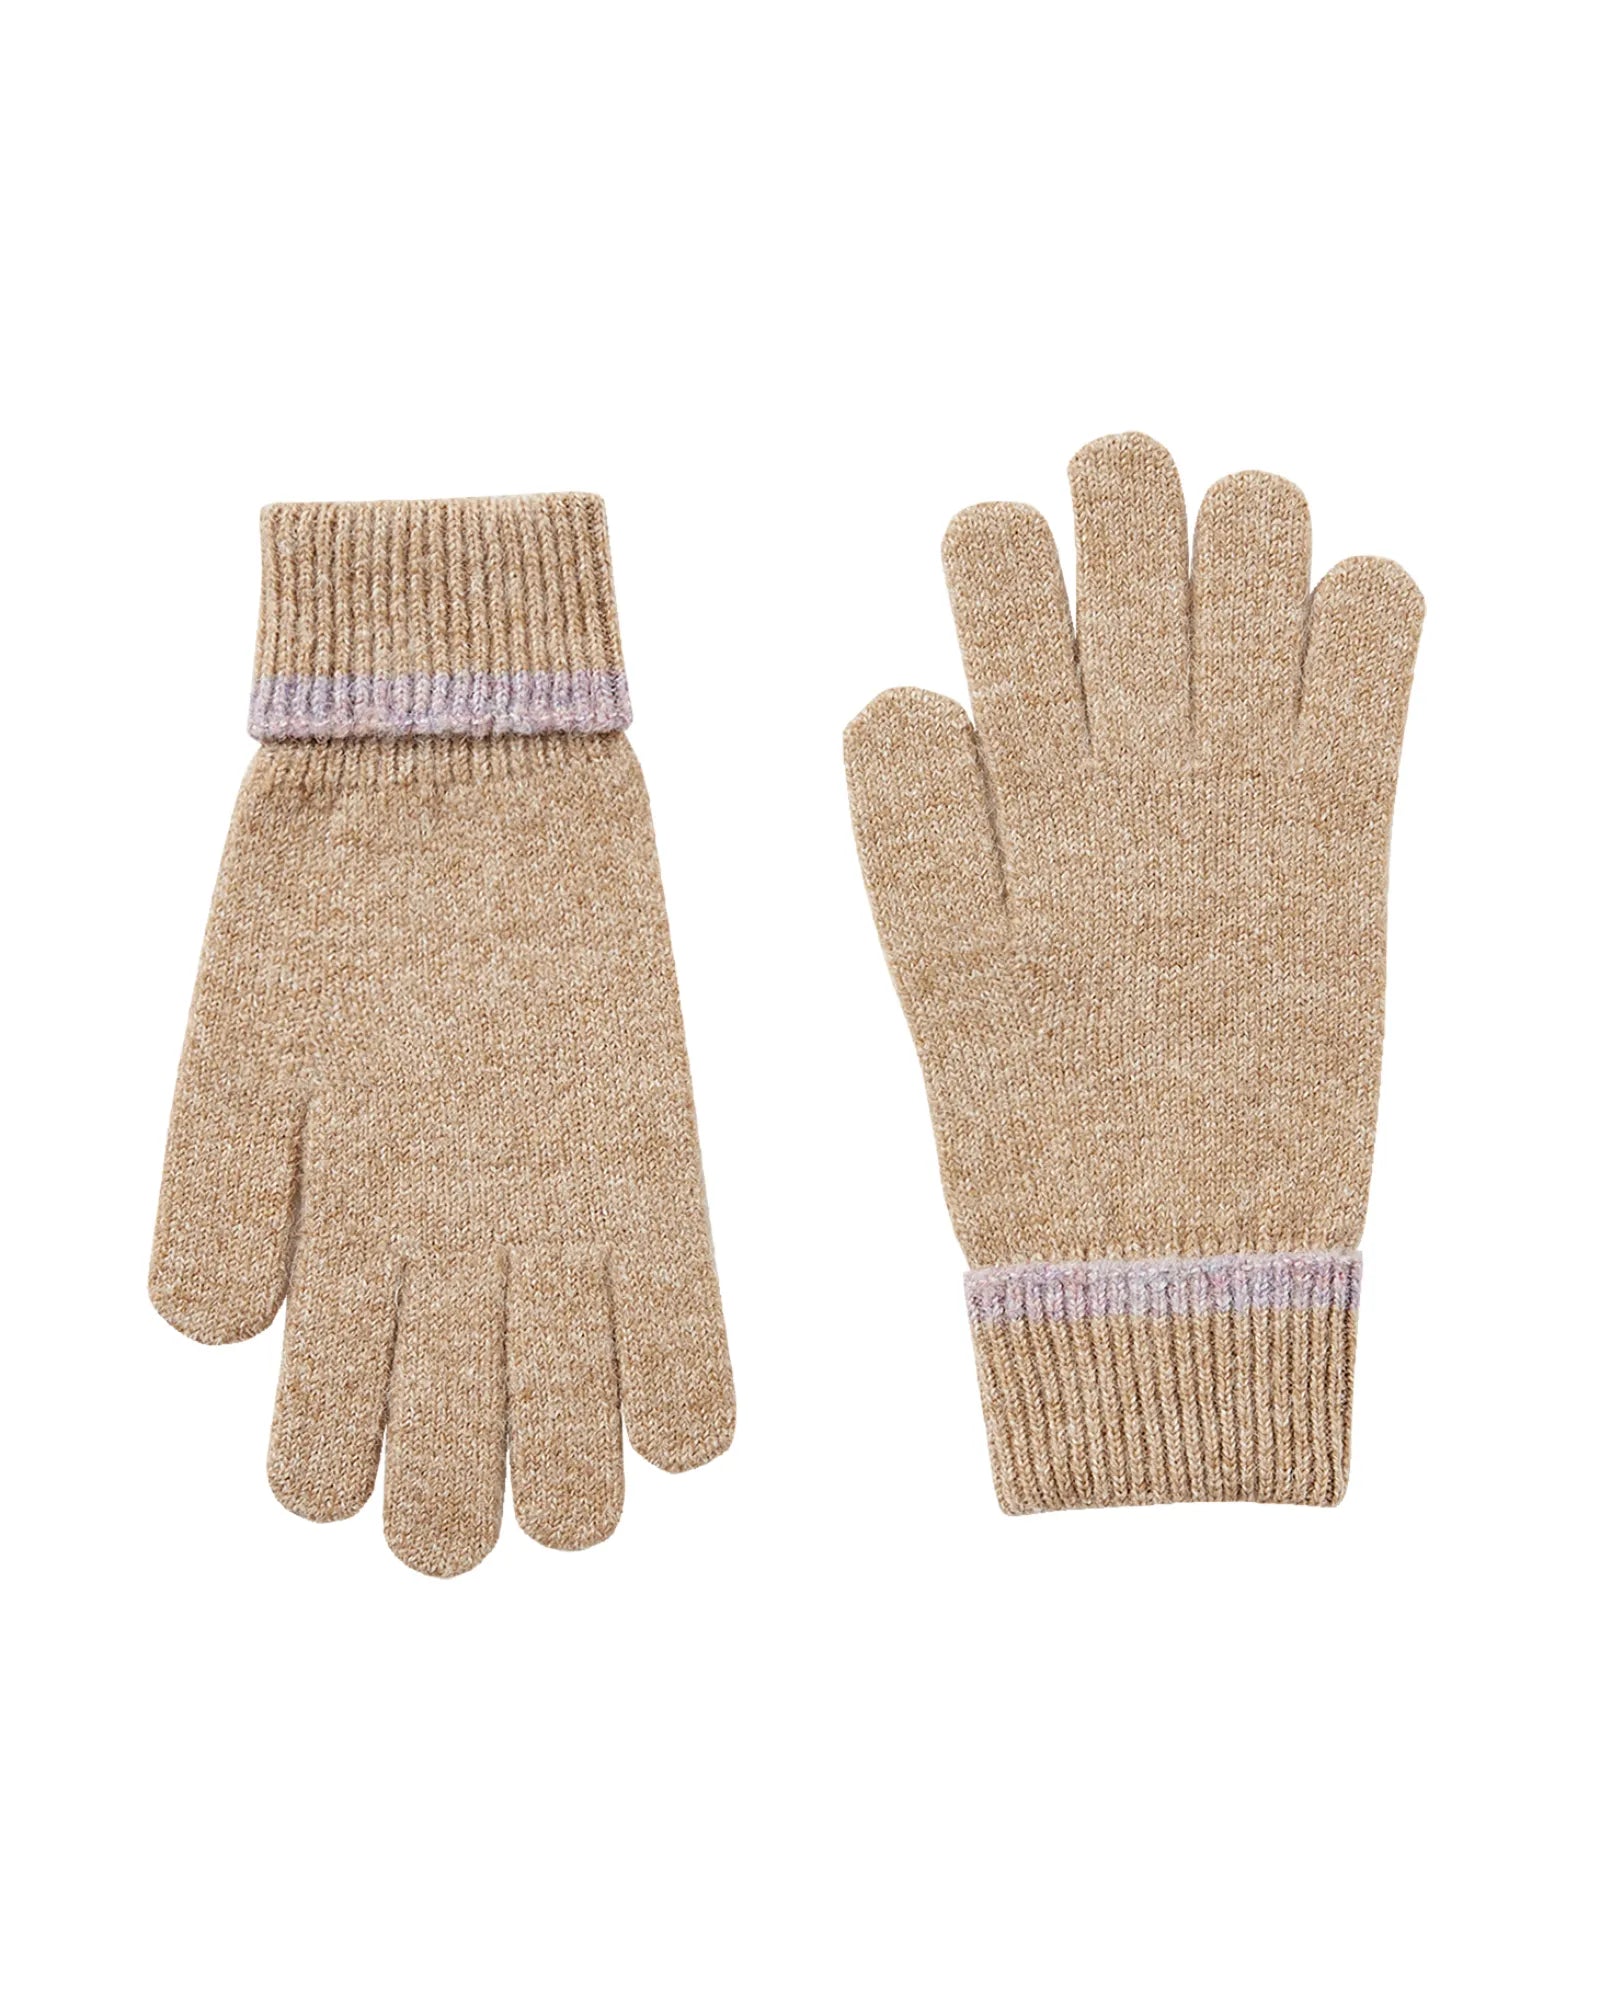 Eloise Oat Knitted Gloves